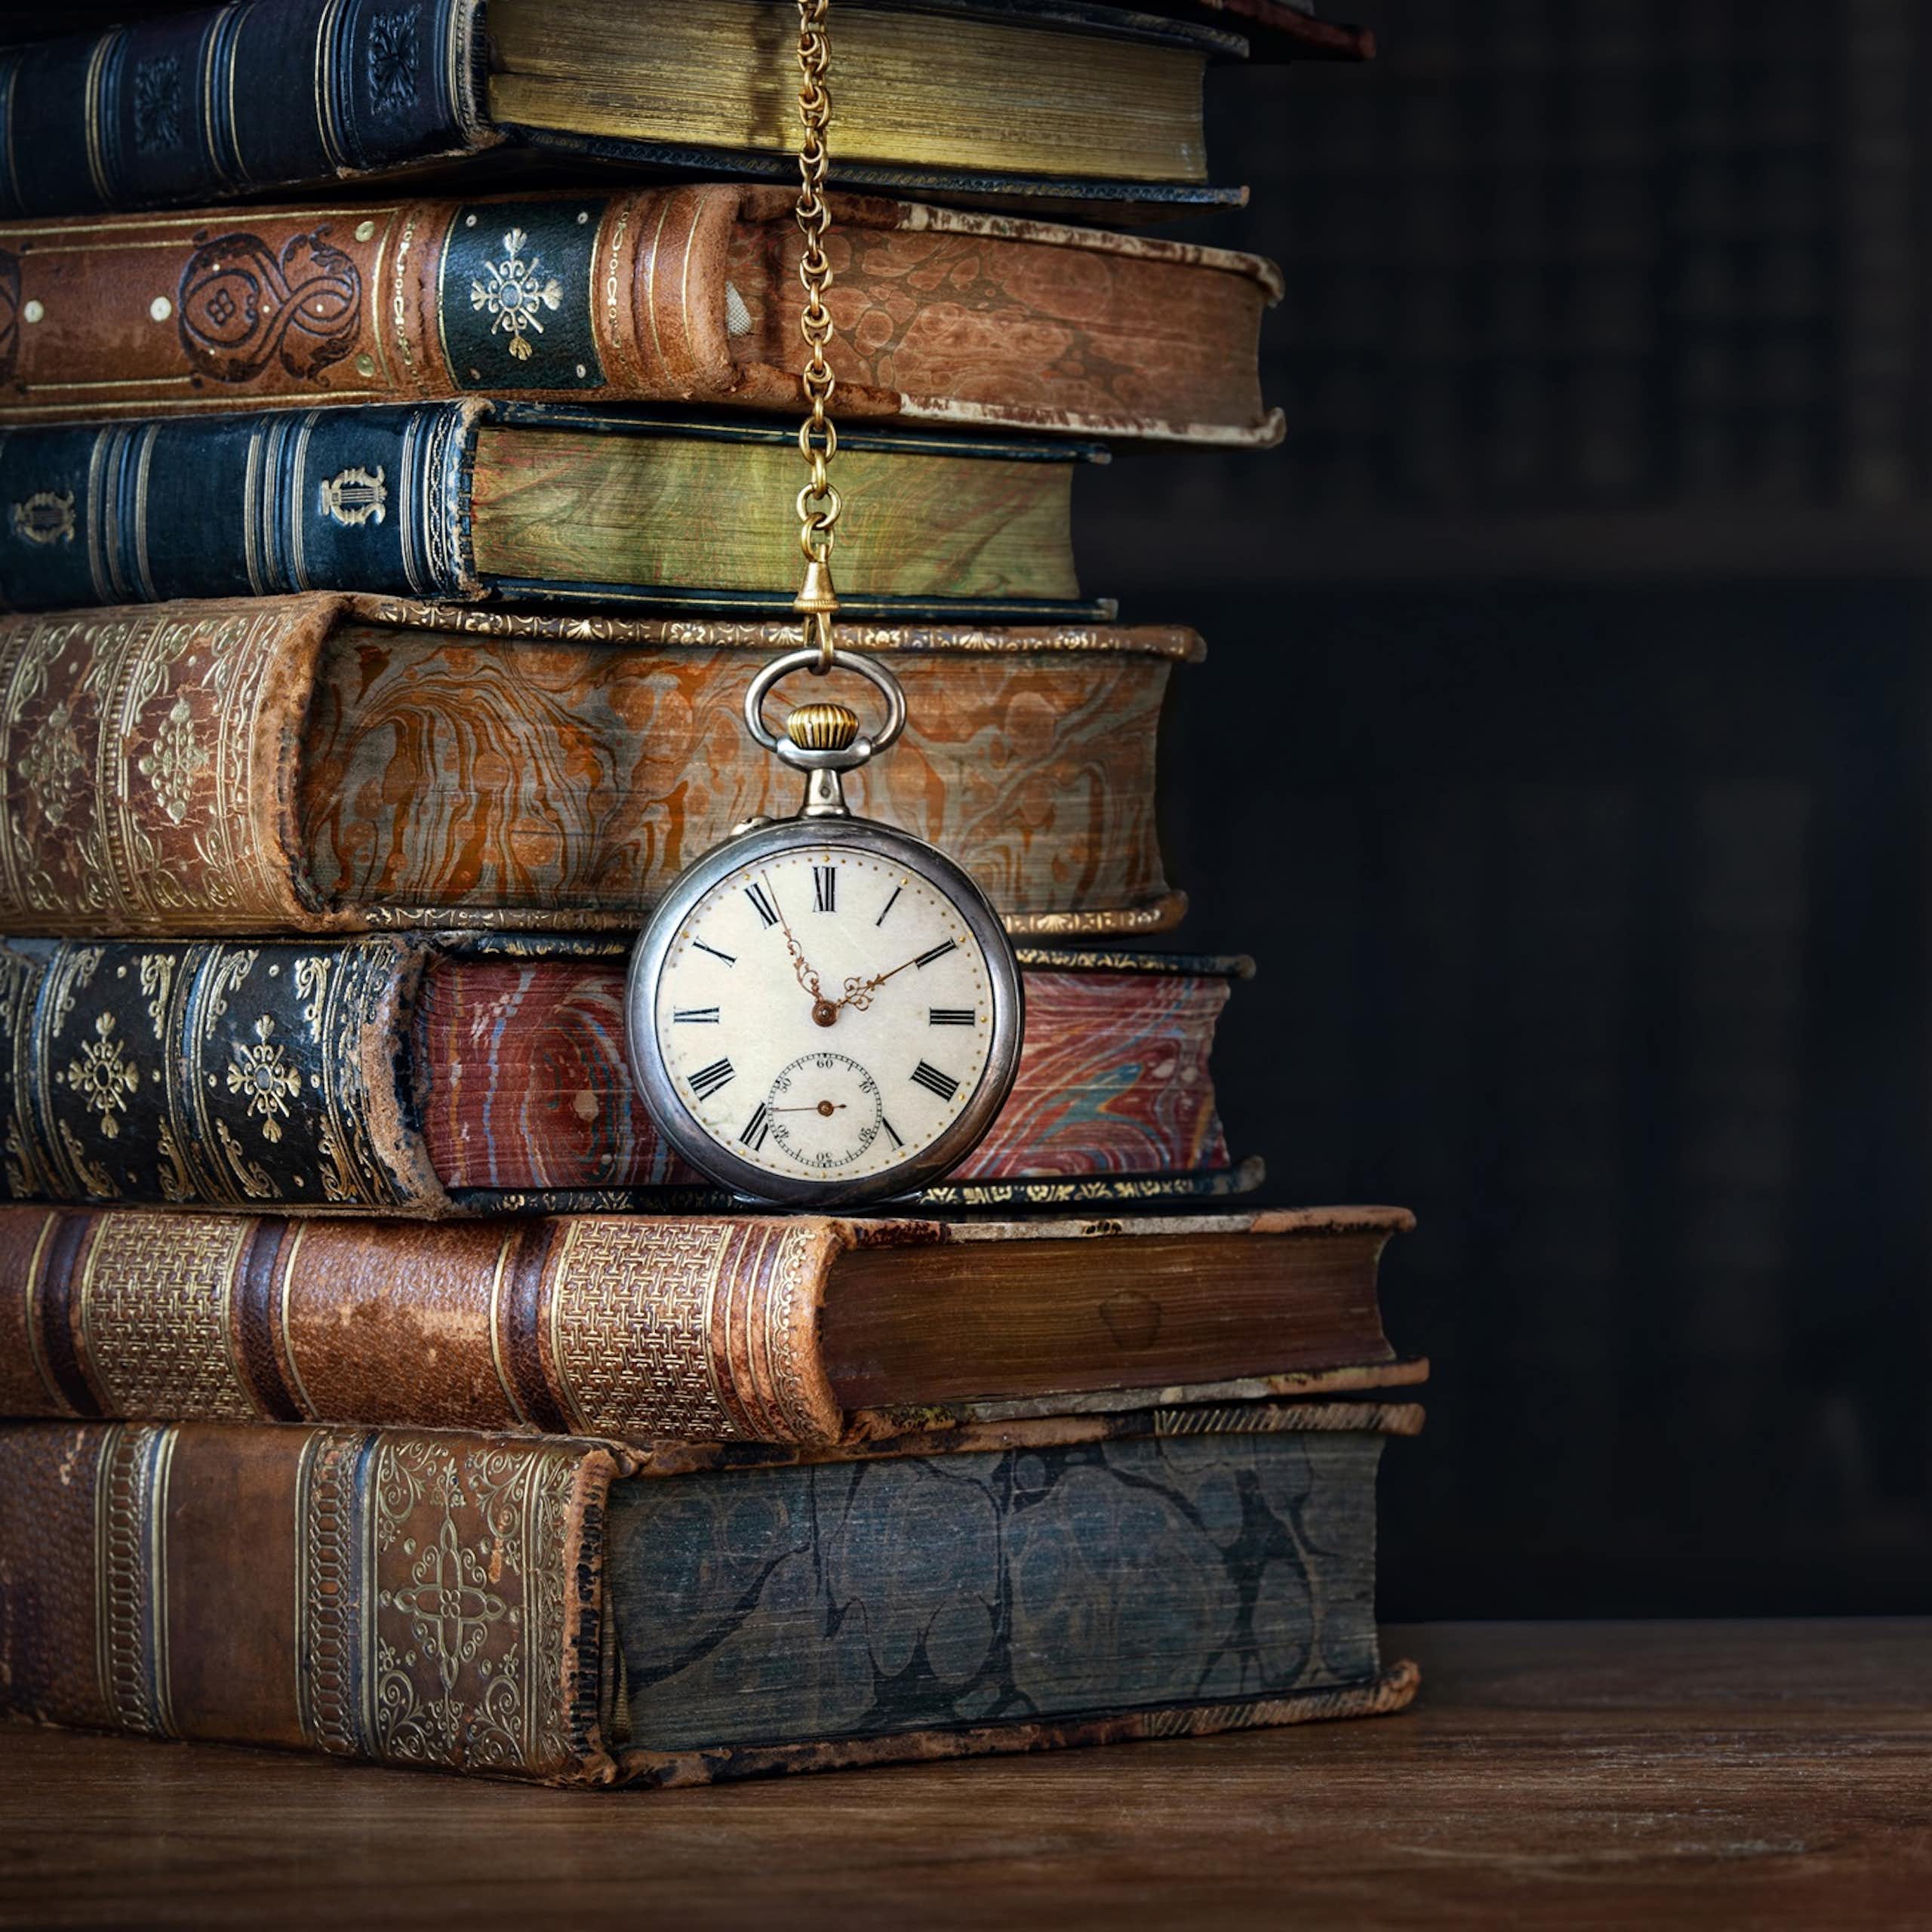 Un reloj de mano colgado en medio de unos libros antiguos.